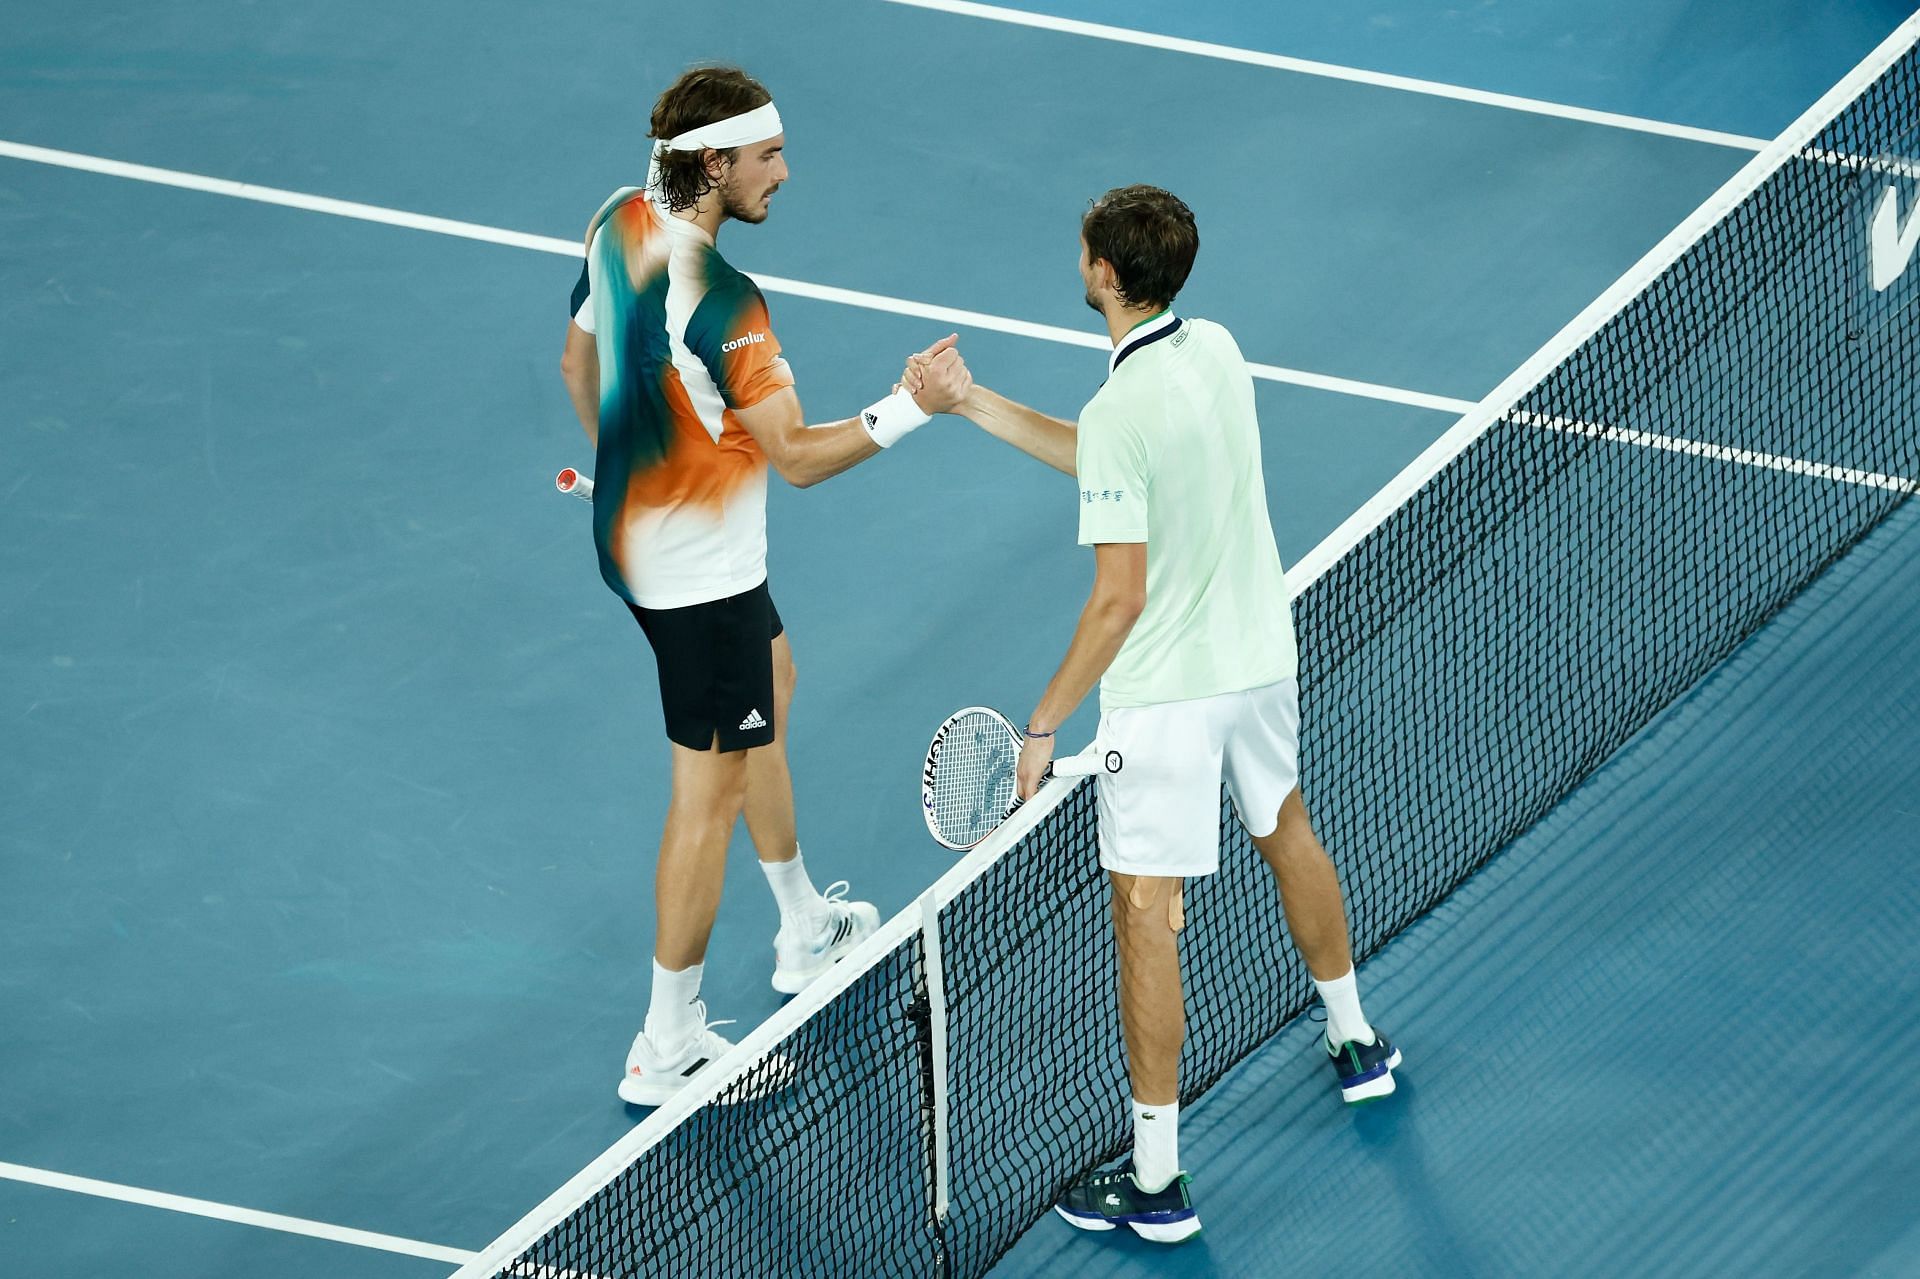 Medevdev and Stefanos Tsitispas at the 2022 Australian Open.